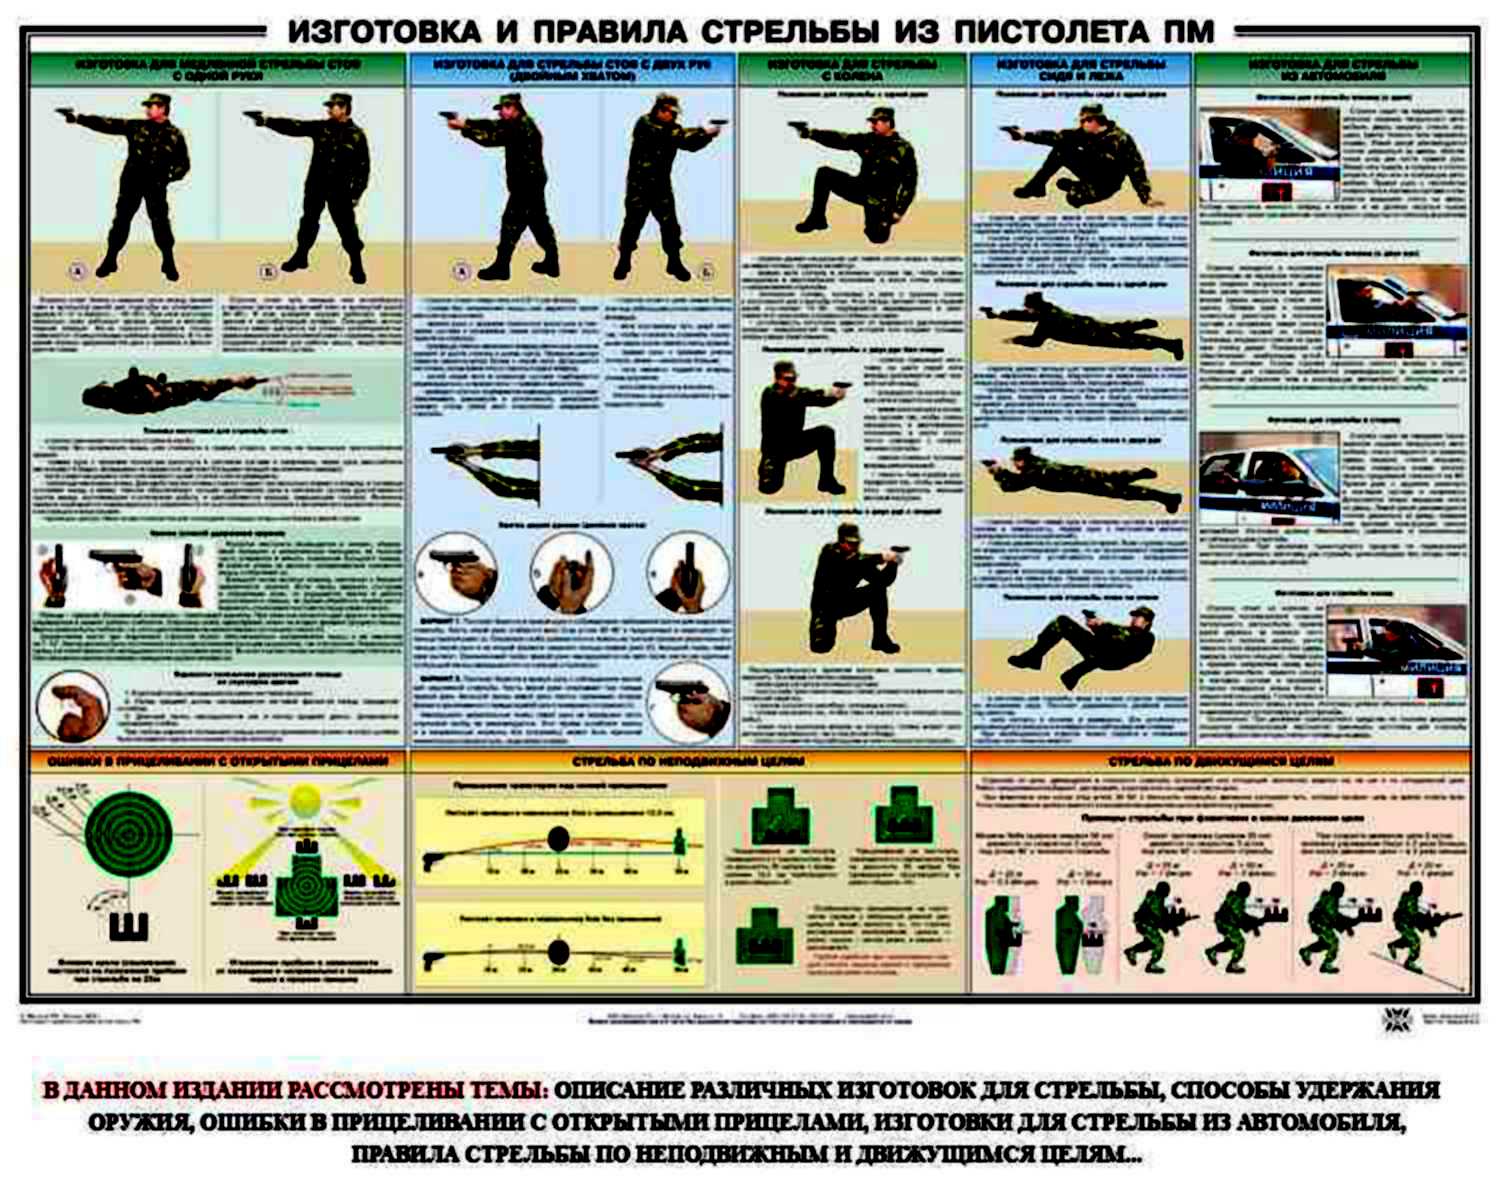 Изготовка и правила стрельбы из пистолета ПМ плакат